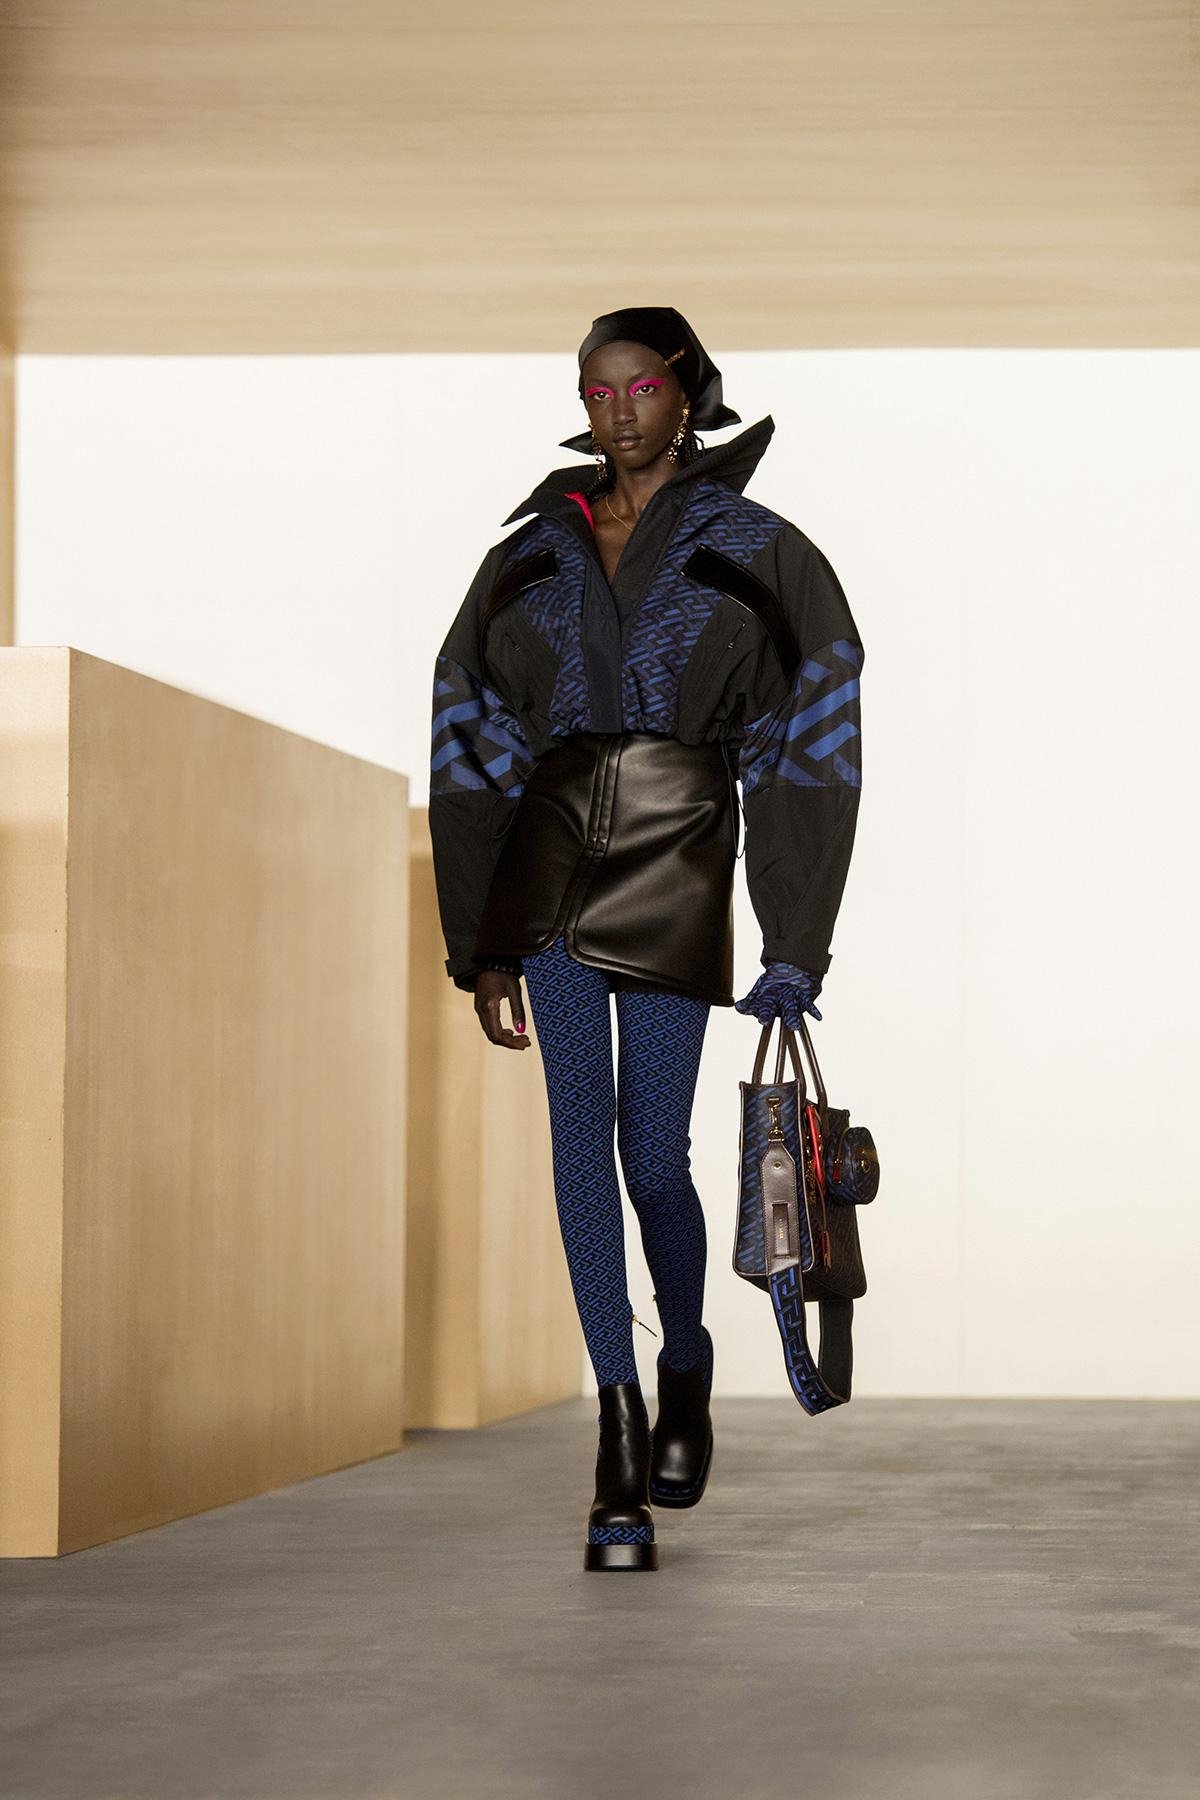 فيرساتشي مجموعة Versace للأزياء الجاهزة لخريف وشتاء 2021-2022